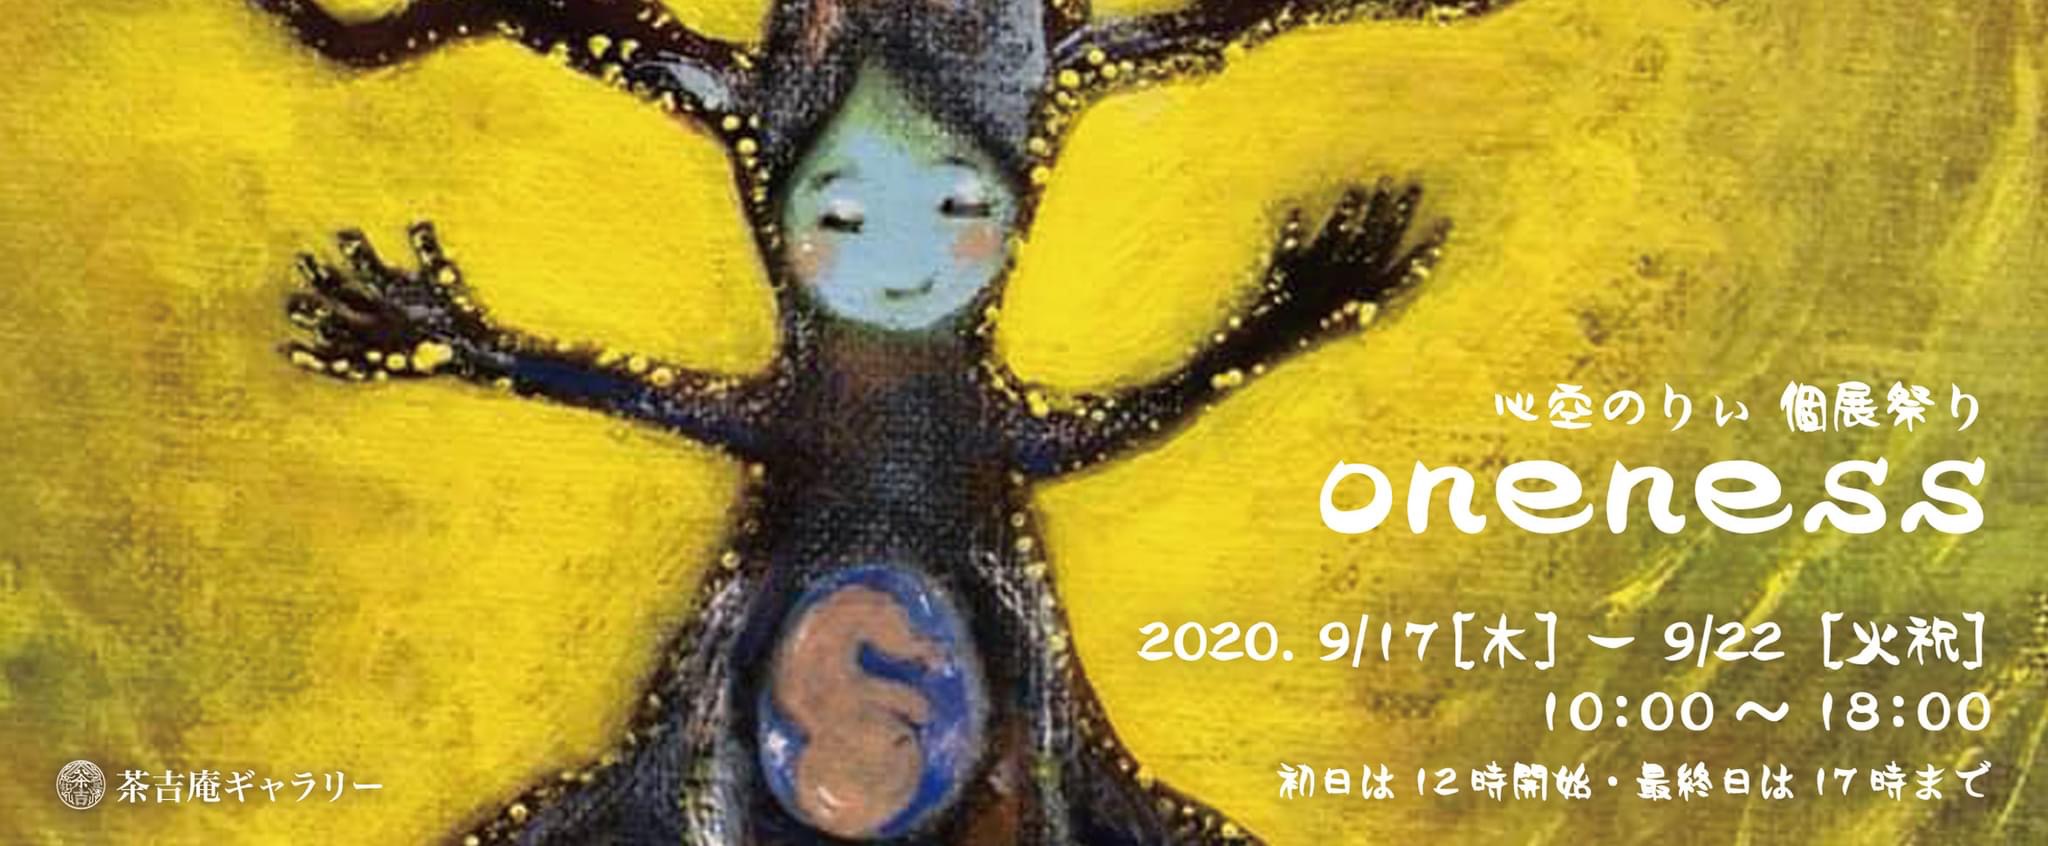 【2020.9.17-9.22】心空のりぃ個展祭り「oneness」